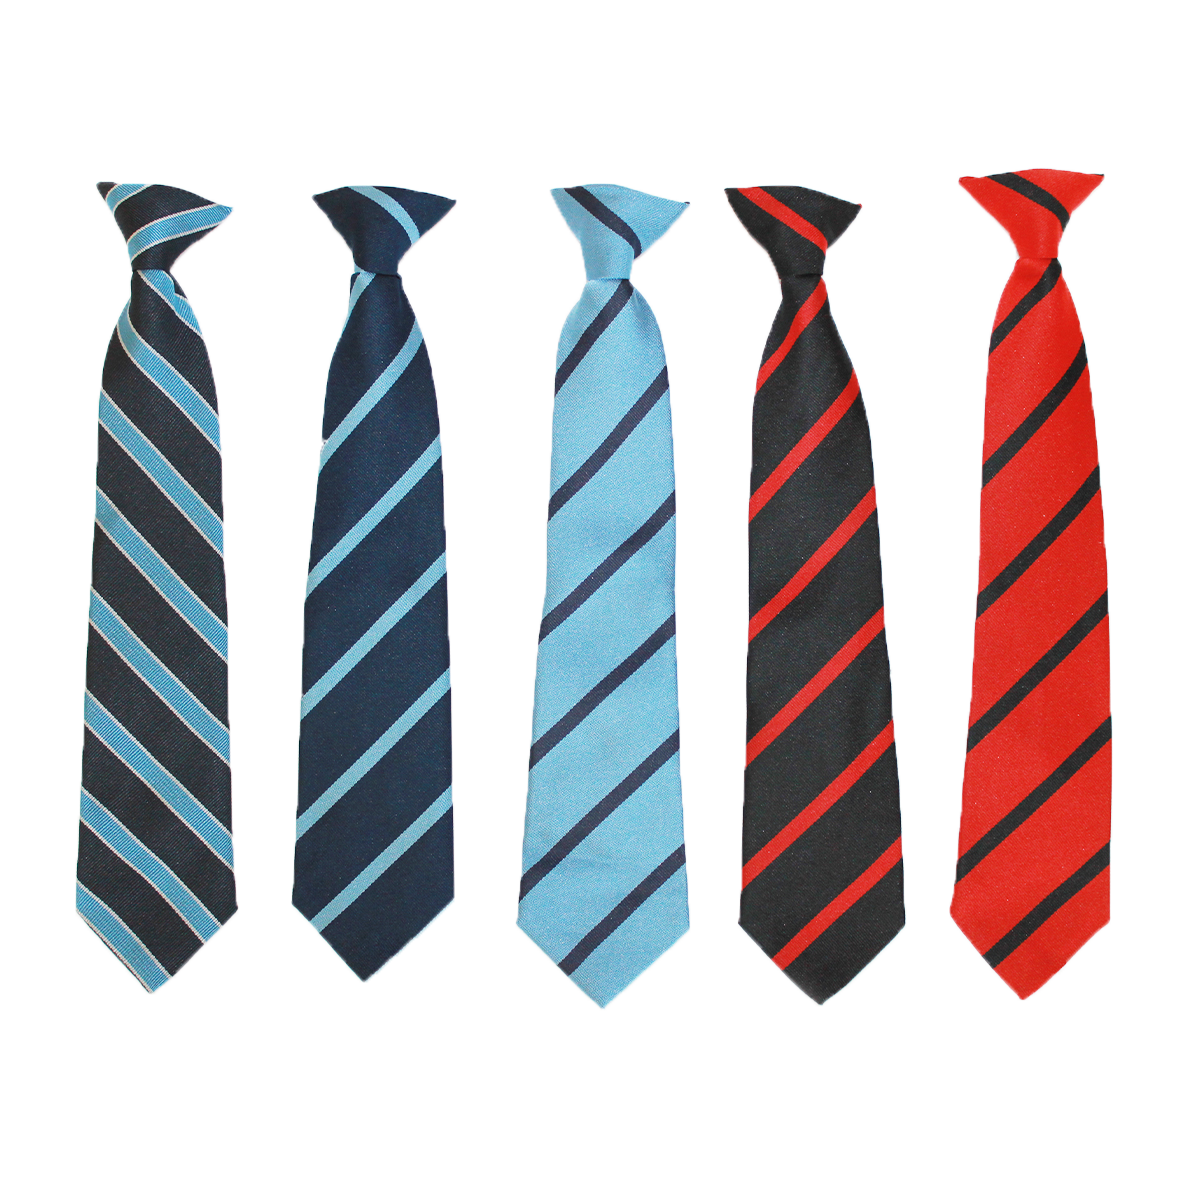 SHS Tie or House Branded Ties